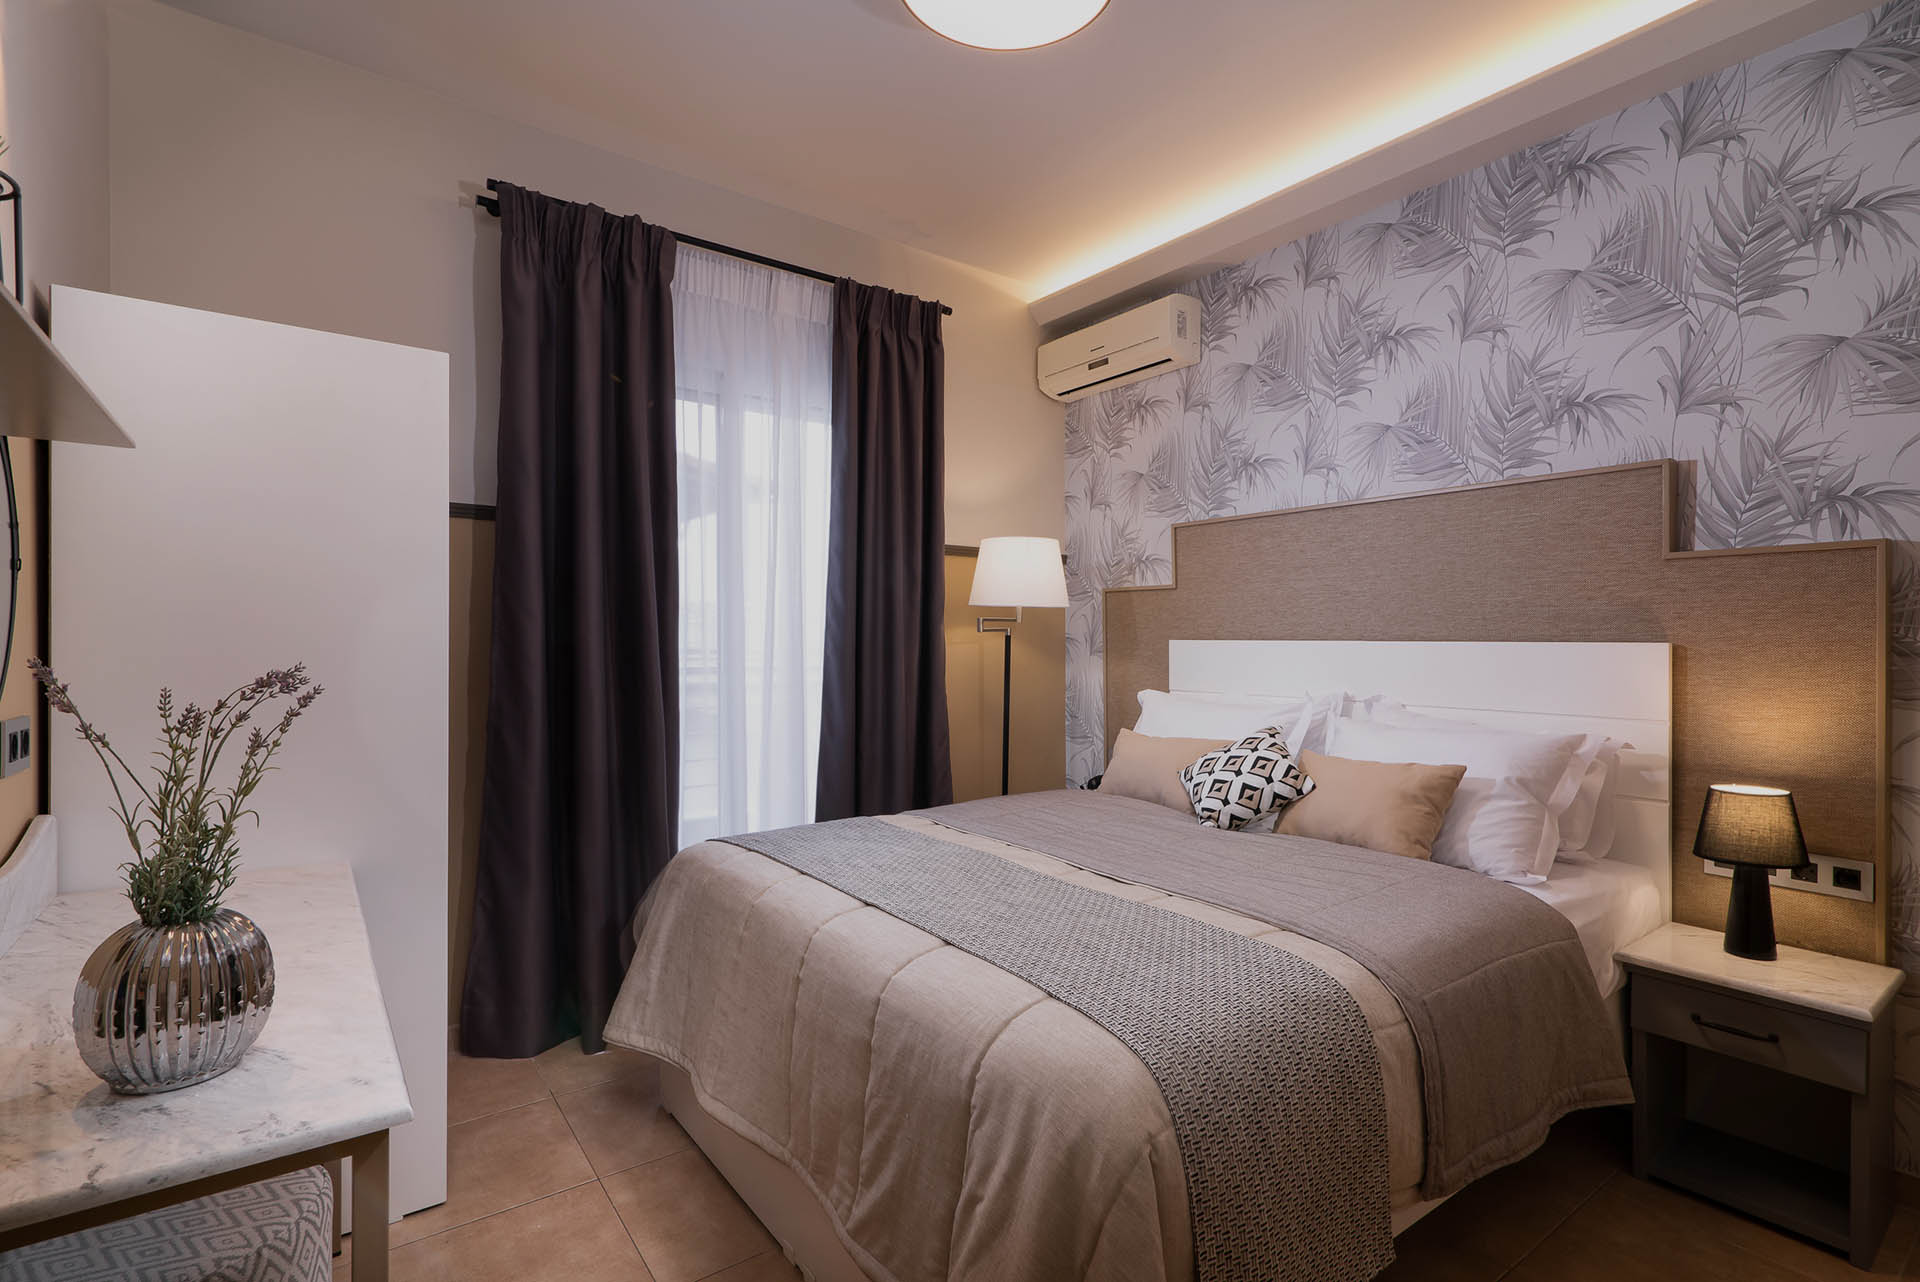 Ενοικιαζόμενα Δωμάτια Παραλία Κατερίνης, Hotel Rooms in Paralia Katerinis